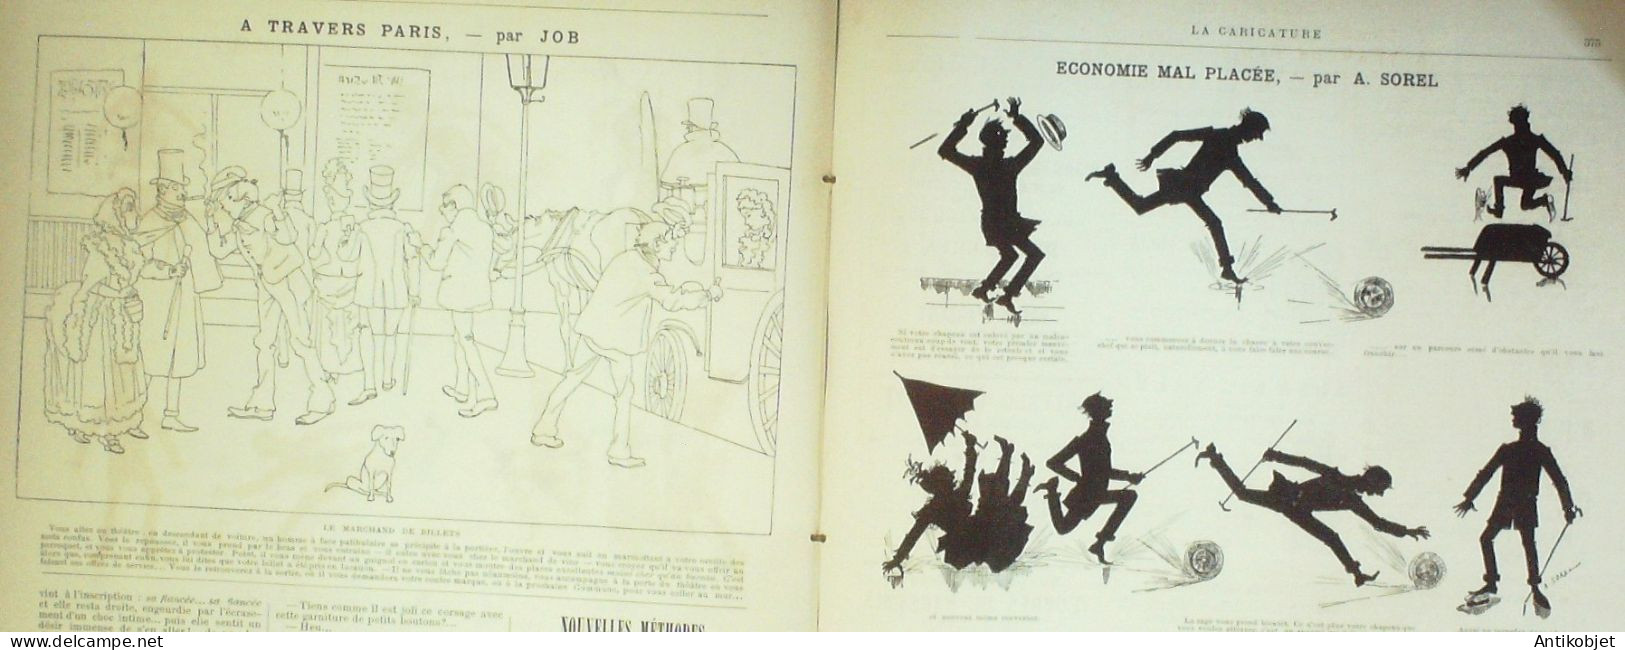 La Caricature 1886 N°359 Draner Richepin Par Luque Malabar Par TrockSorel - Revues Anciennes - Avant 1900